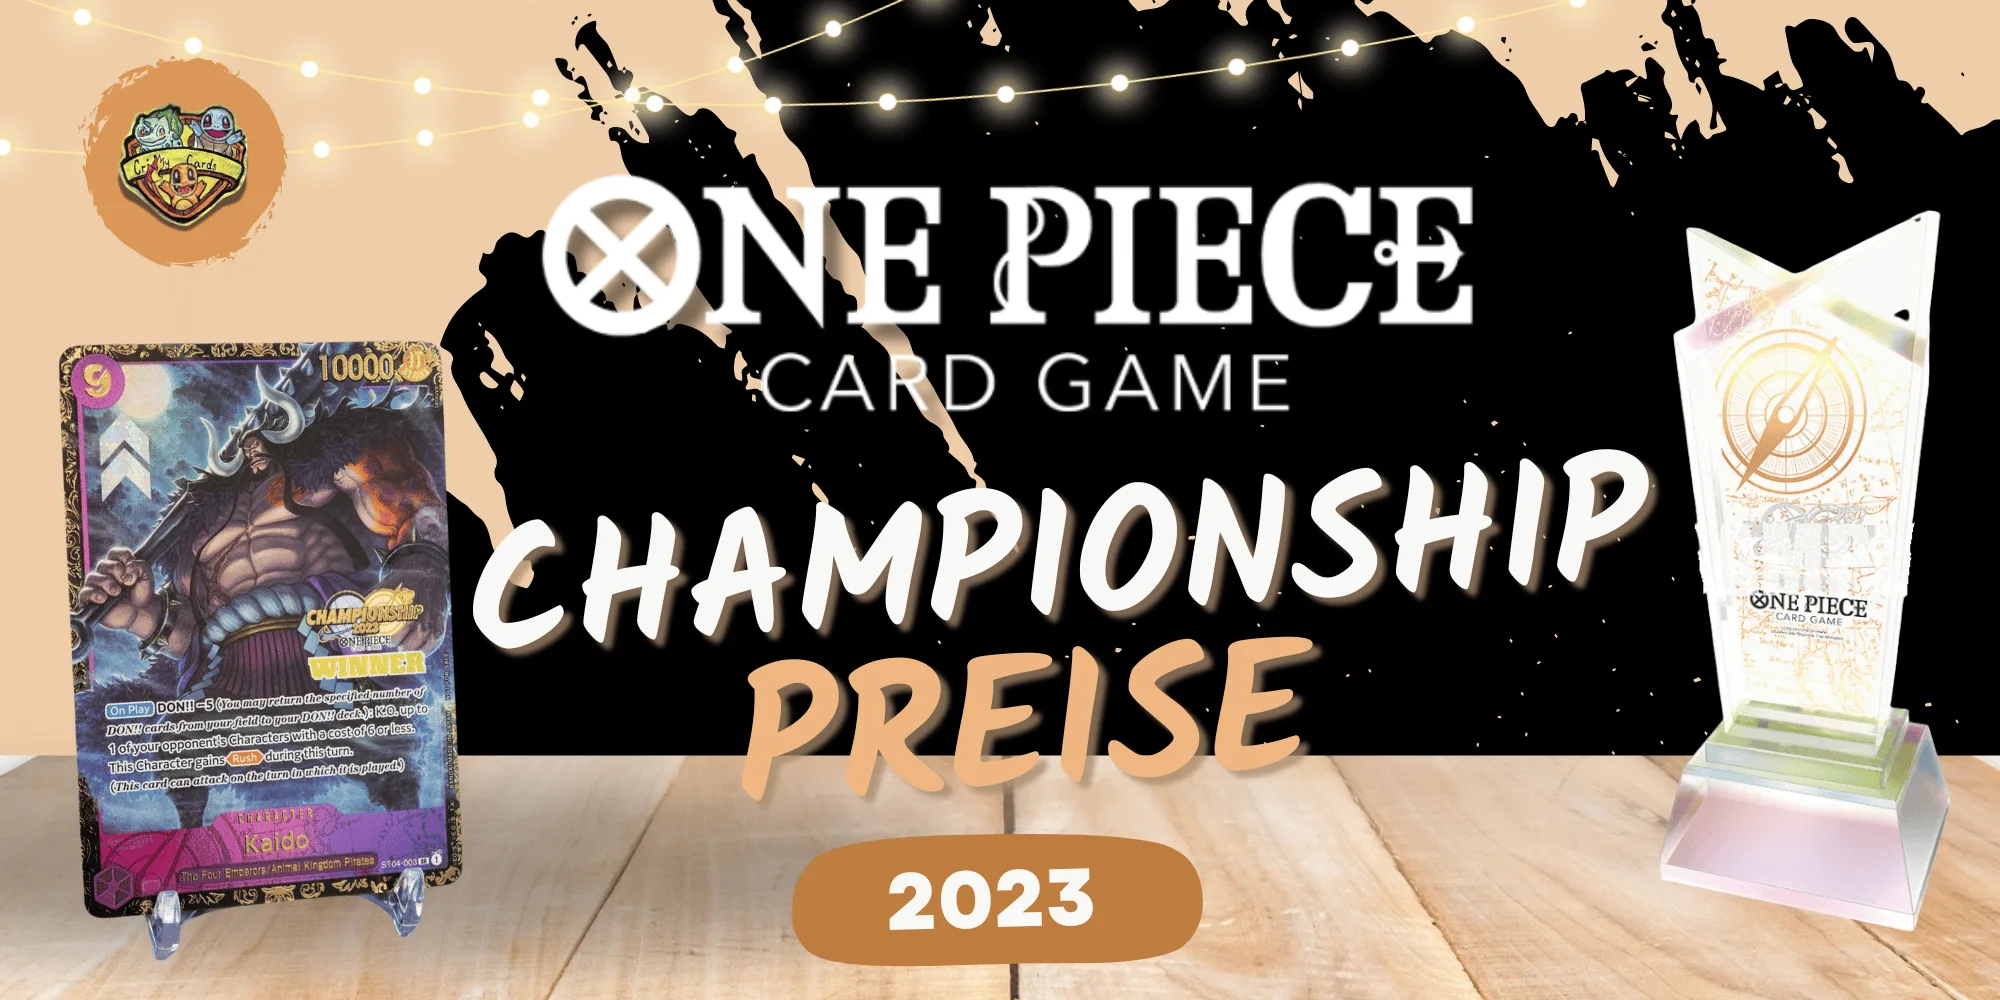 One Piece Championsship Finals